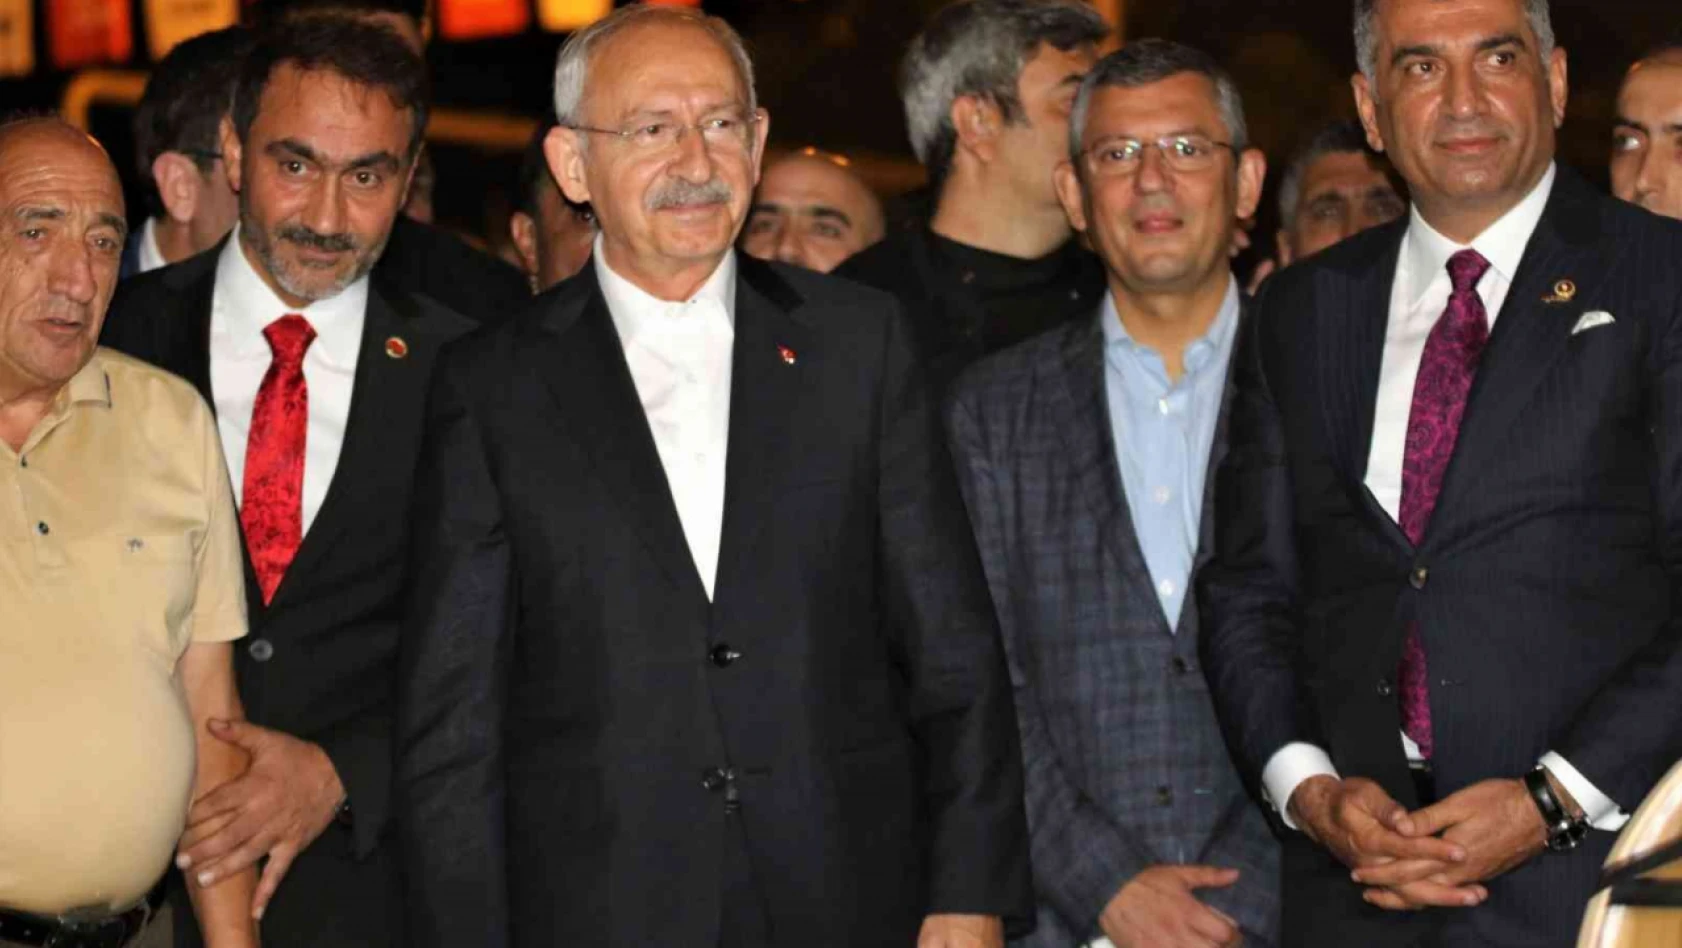 CHP Genel Başkanı Kılıçdaroğlu Elazığ'da